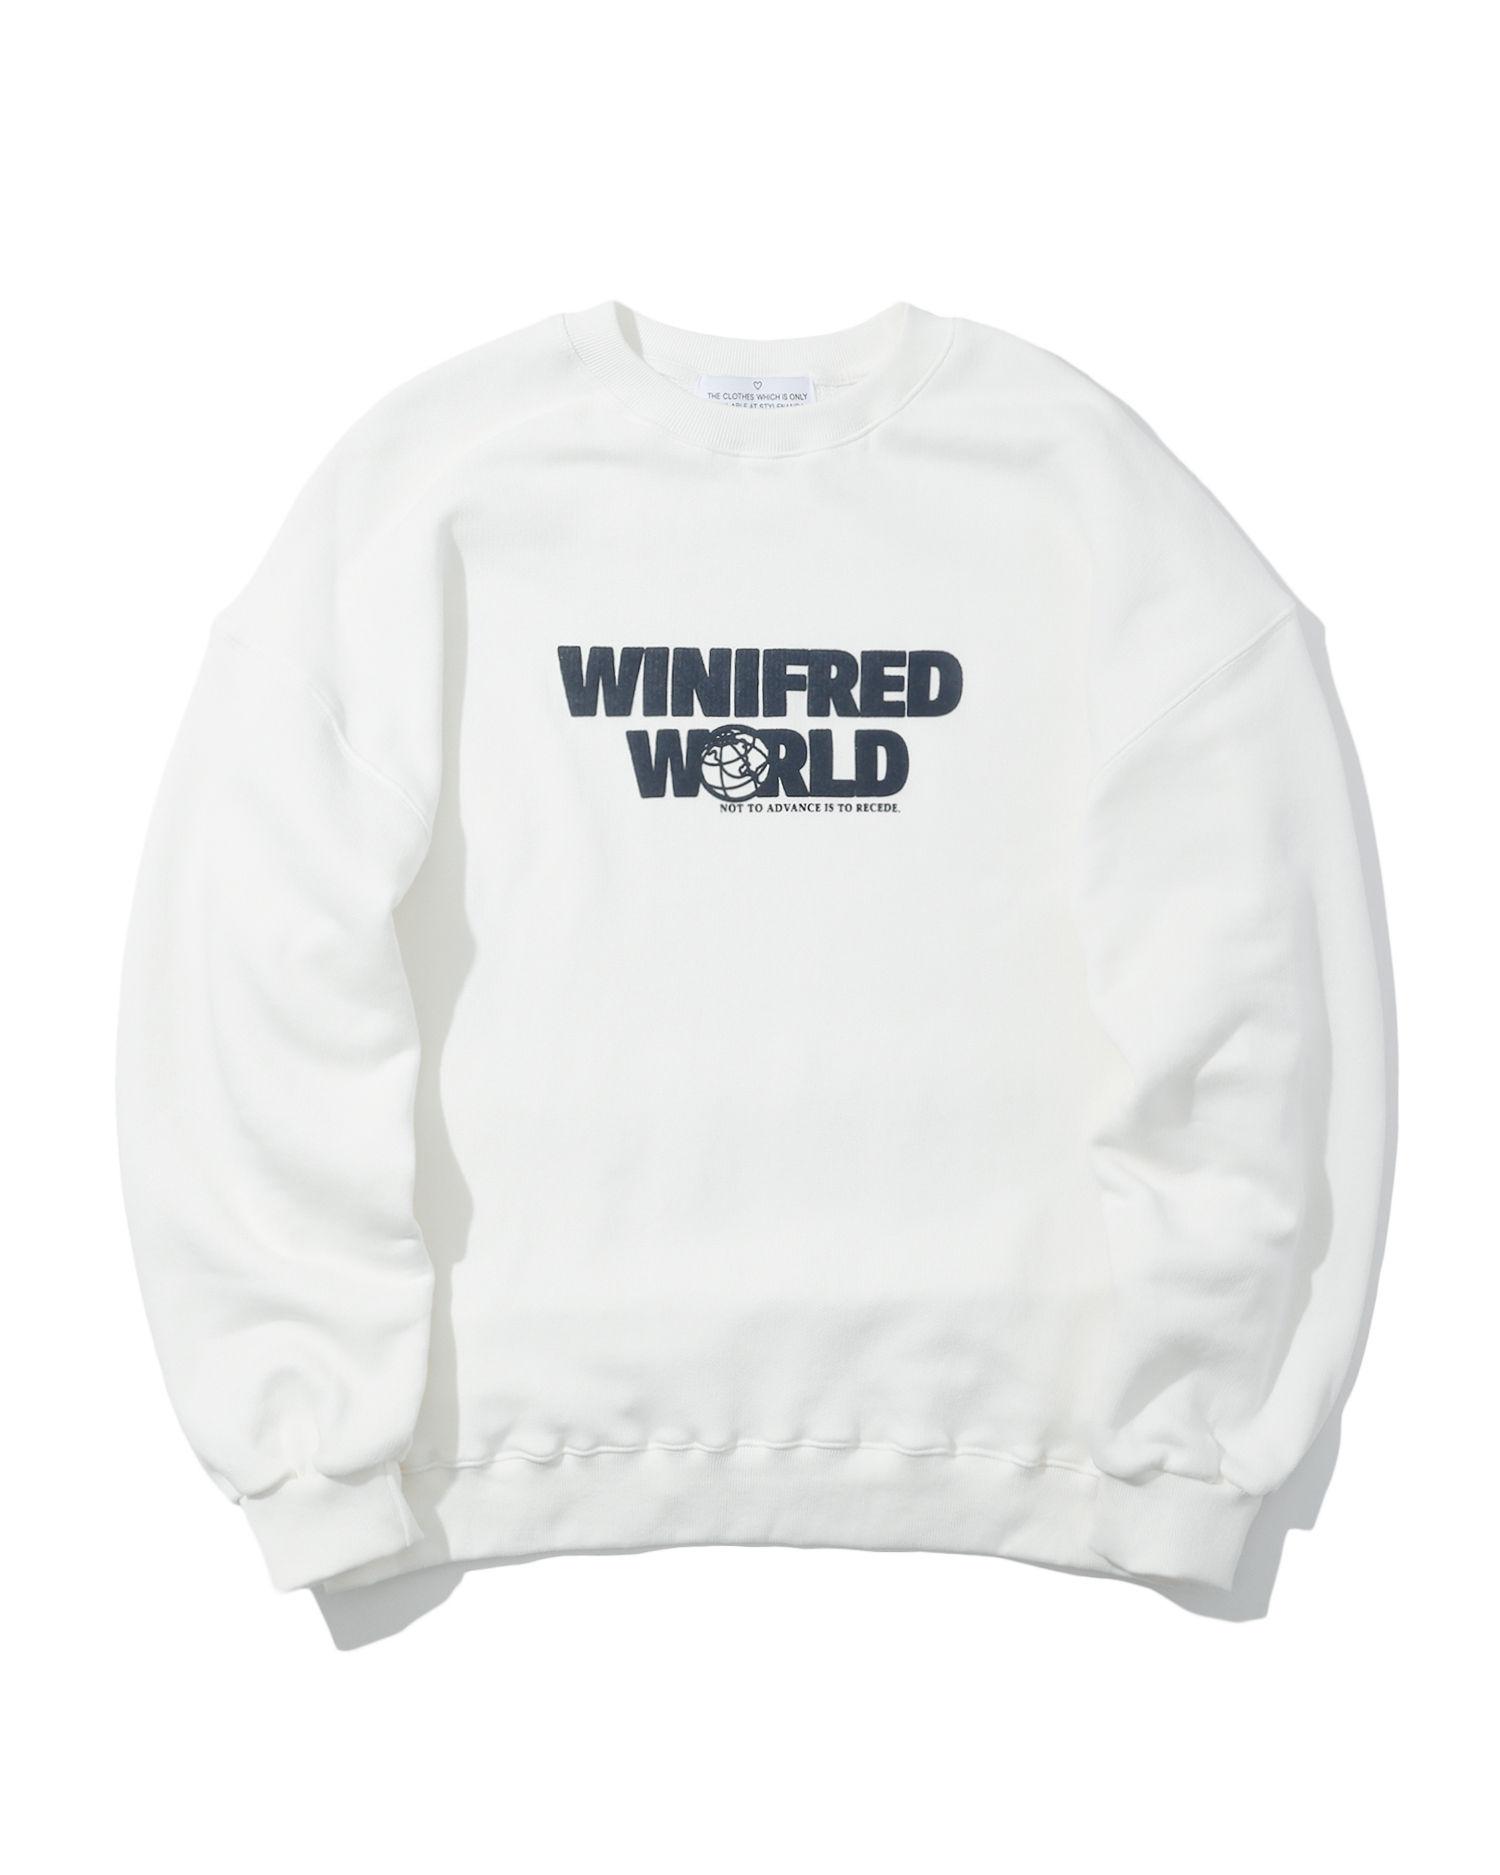 Winifred World print sweatshirt by STYLENANDA